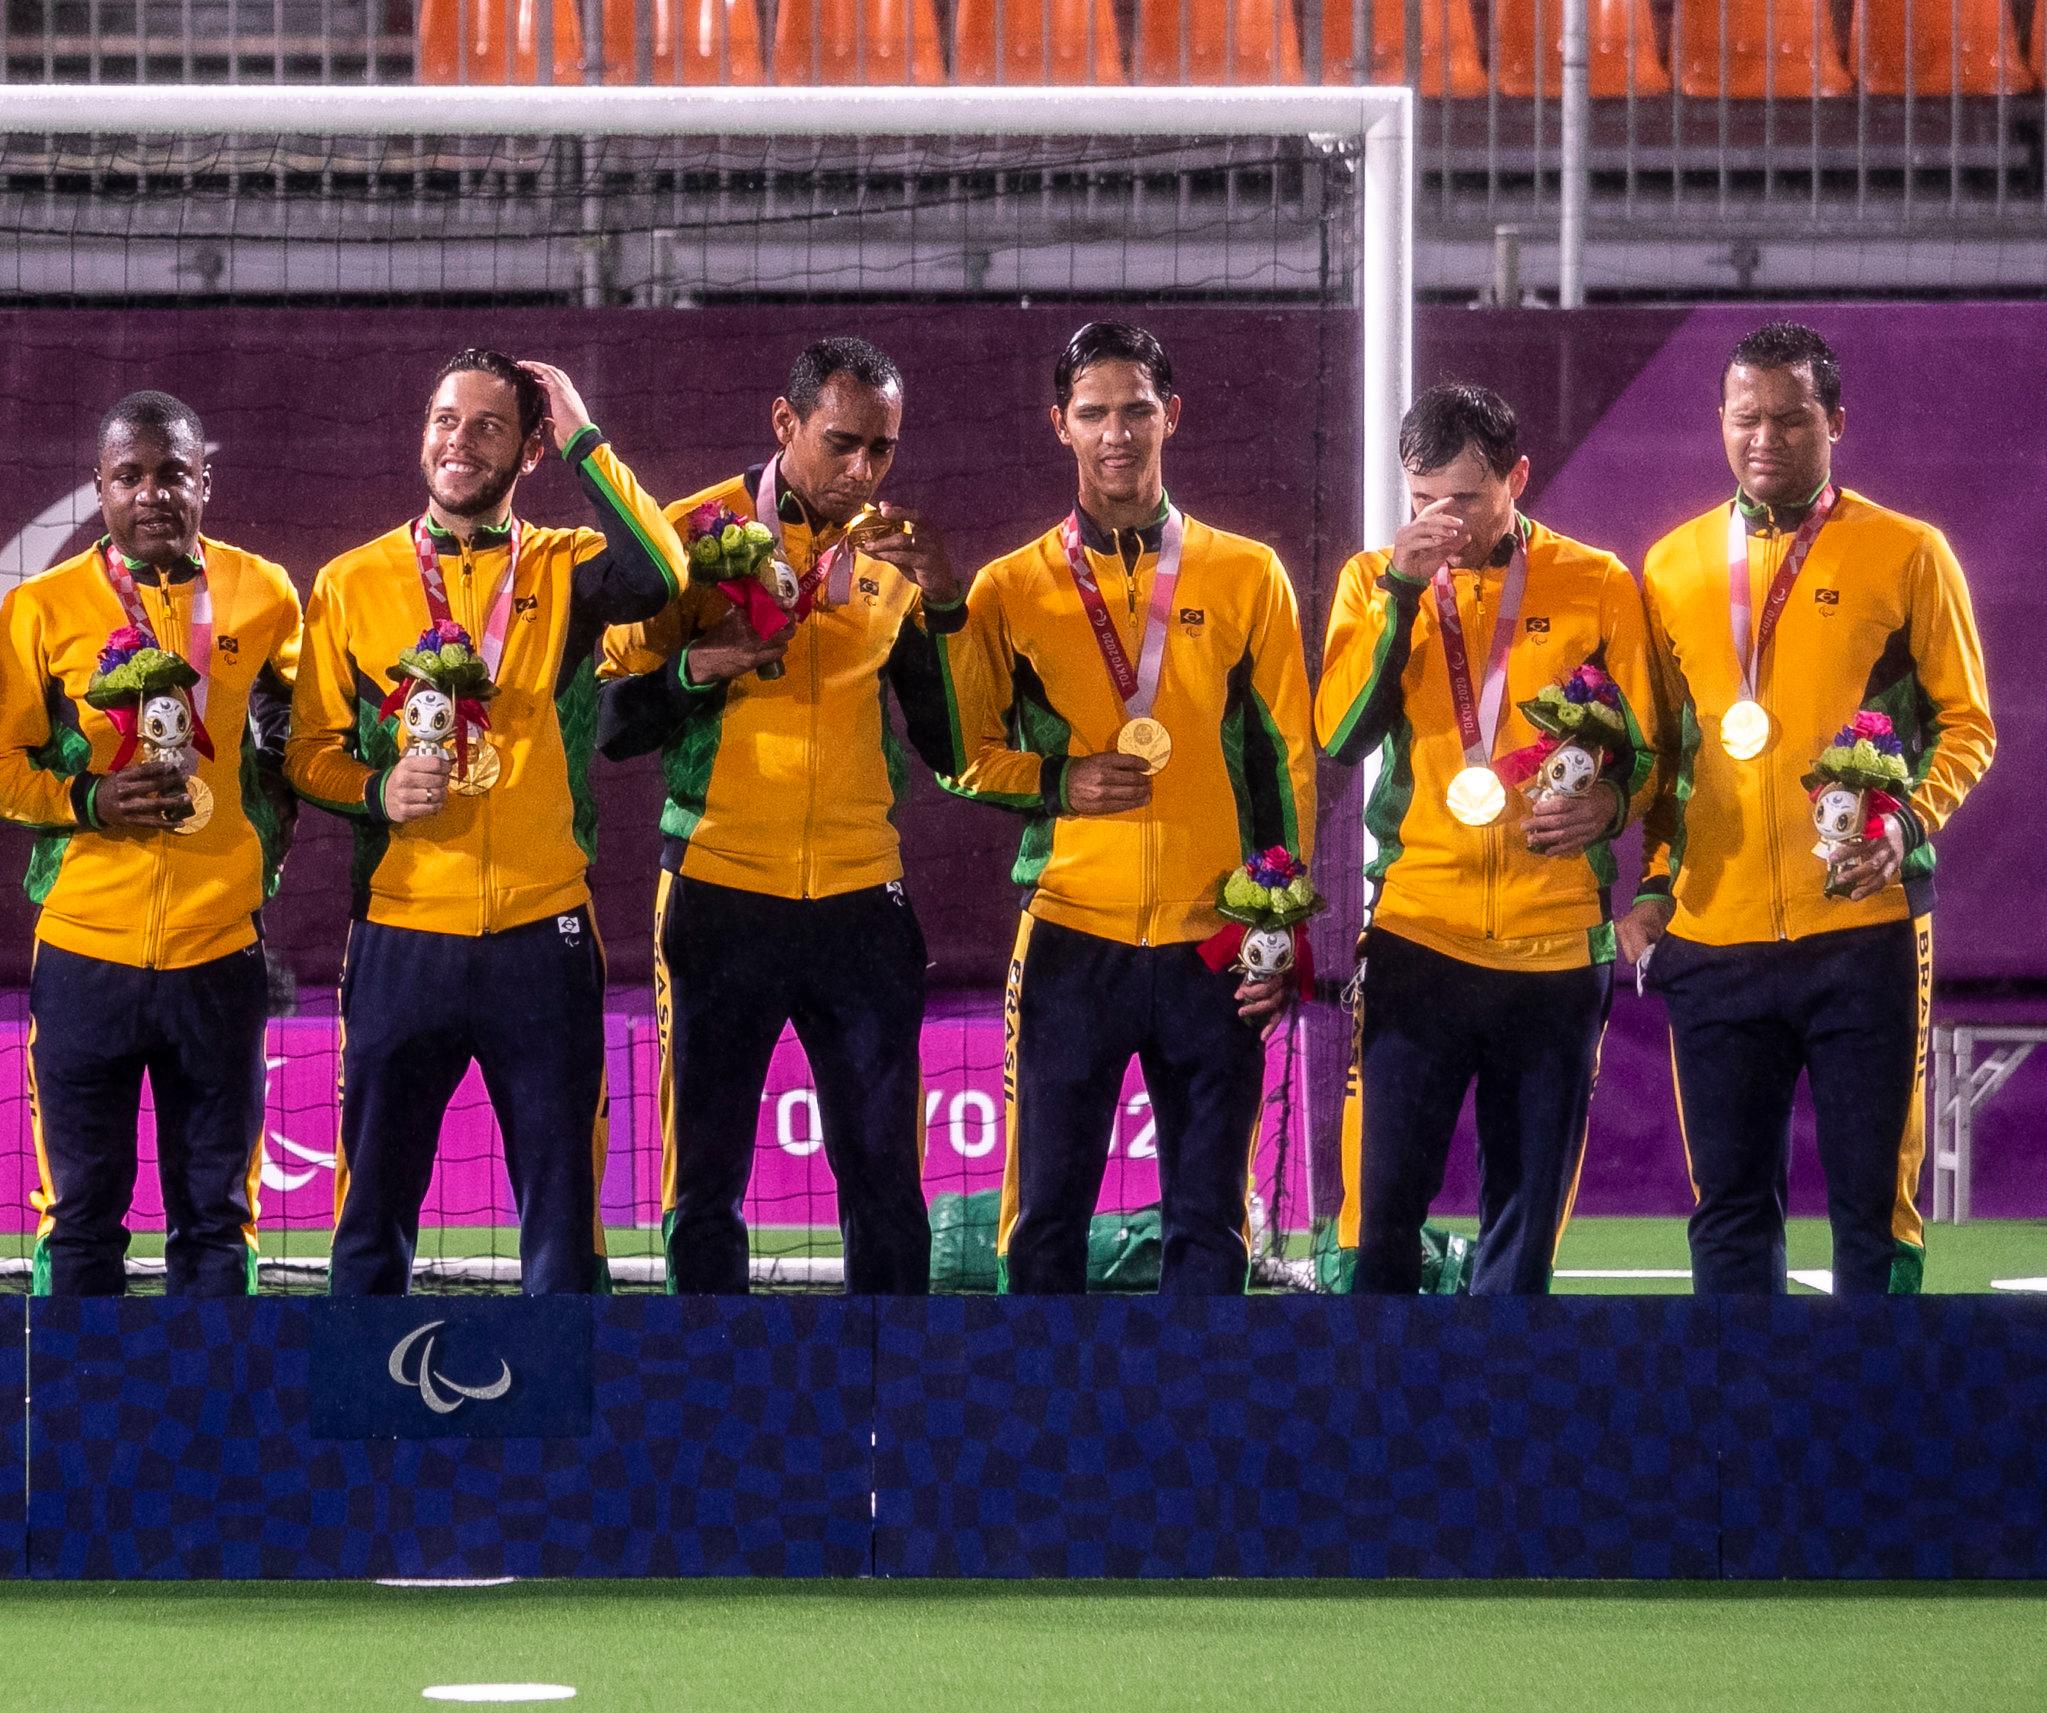 Com penta no futebol de 5, Brasil garante melhor campanha em Paralimpíadas